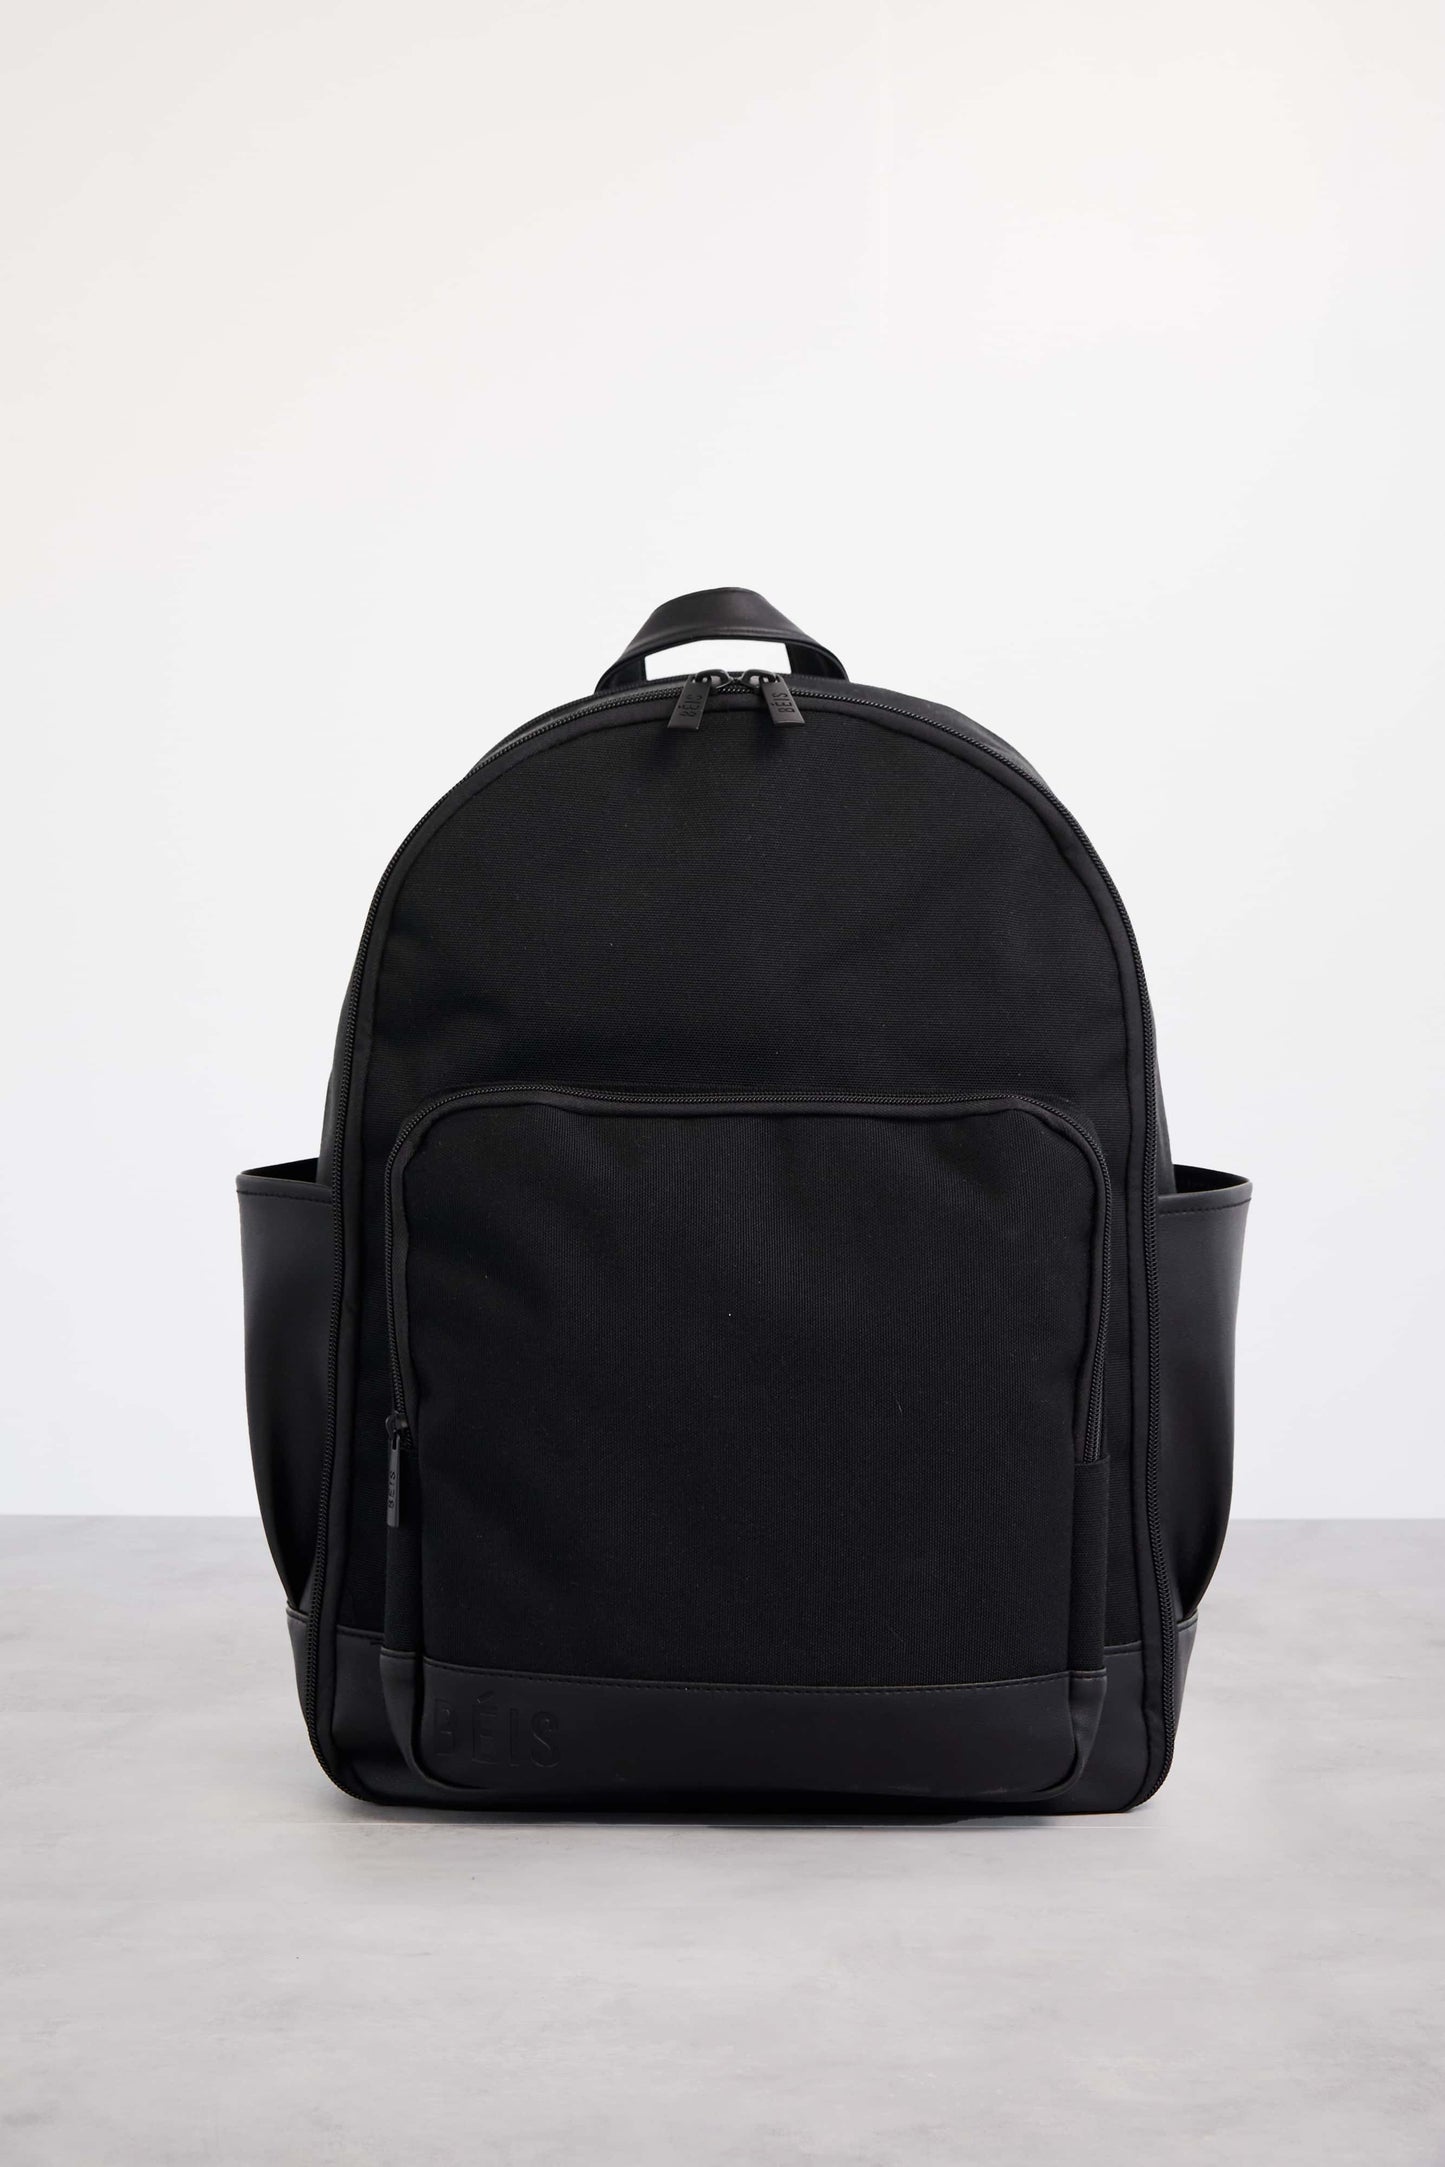 Backpack Black Front